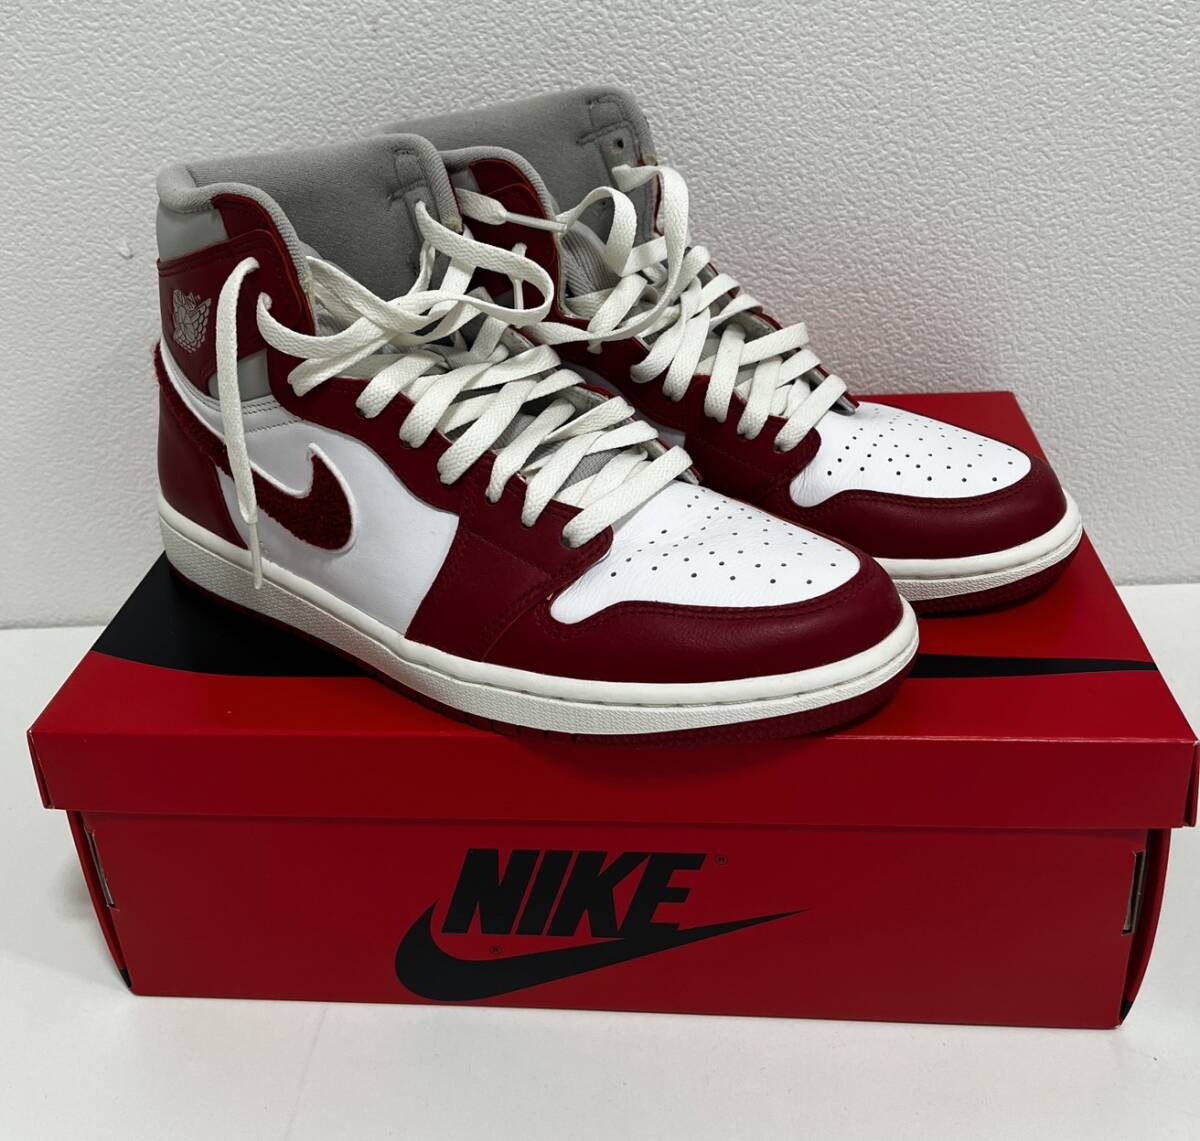 [SOB3765SG]1 иен ~NIKE Nike AIR JORDAN воздушный Jordan 27.5 см долгосрочное хранение текущее состояние товар белый красный спортивные туфли мода модный 